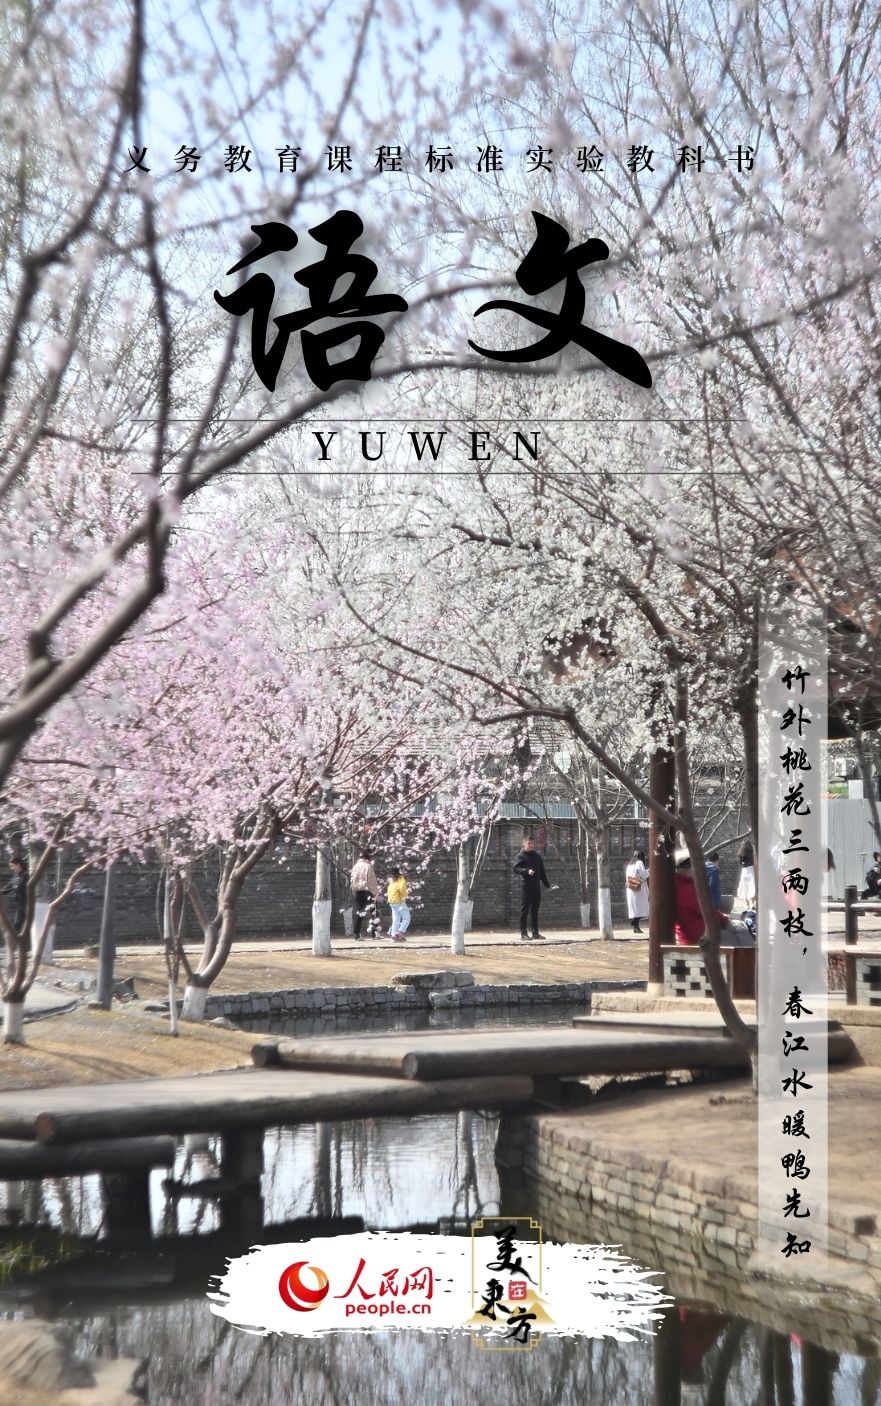 北京三里河公园内春桃竞相开放	。